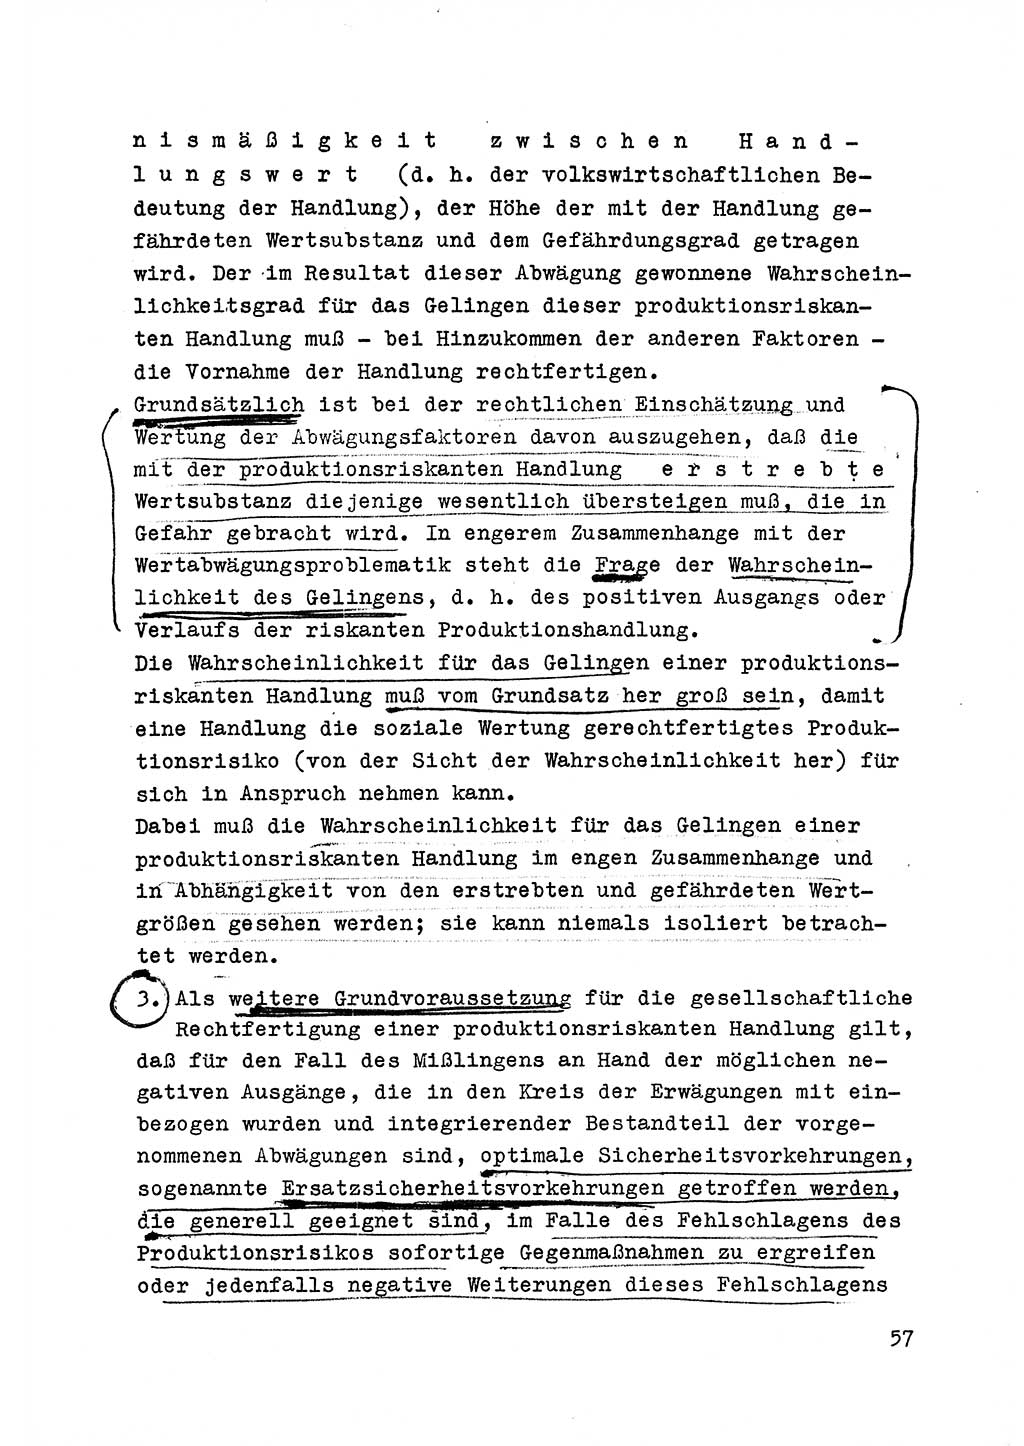 Strafrecht der DDR (Deutsche Demokratische Republik), Besonderer Teil, Lehrmaterial, Heft 6 1970, Seite 57 (Strafr. DDR BT Lehrmat. H. 6 1970, S. 57)